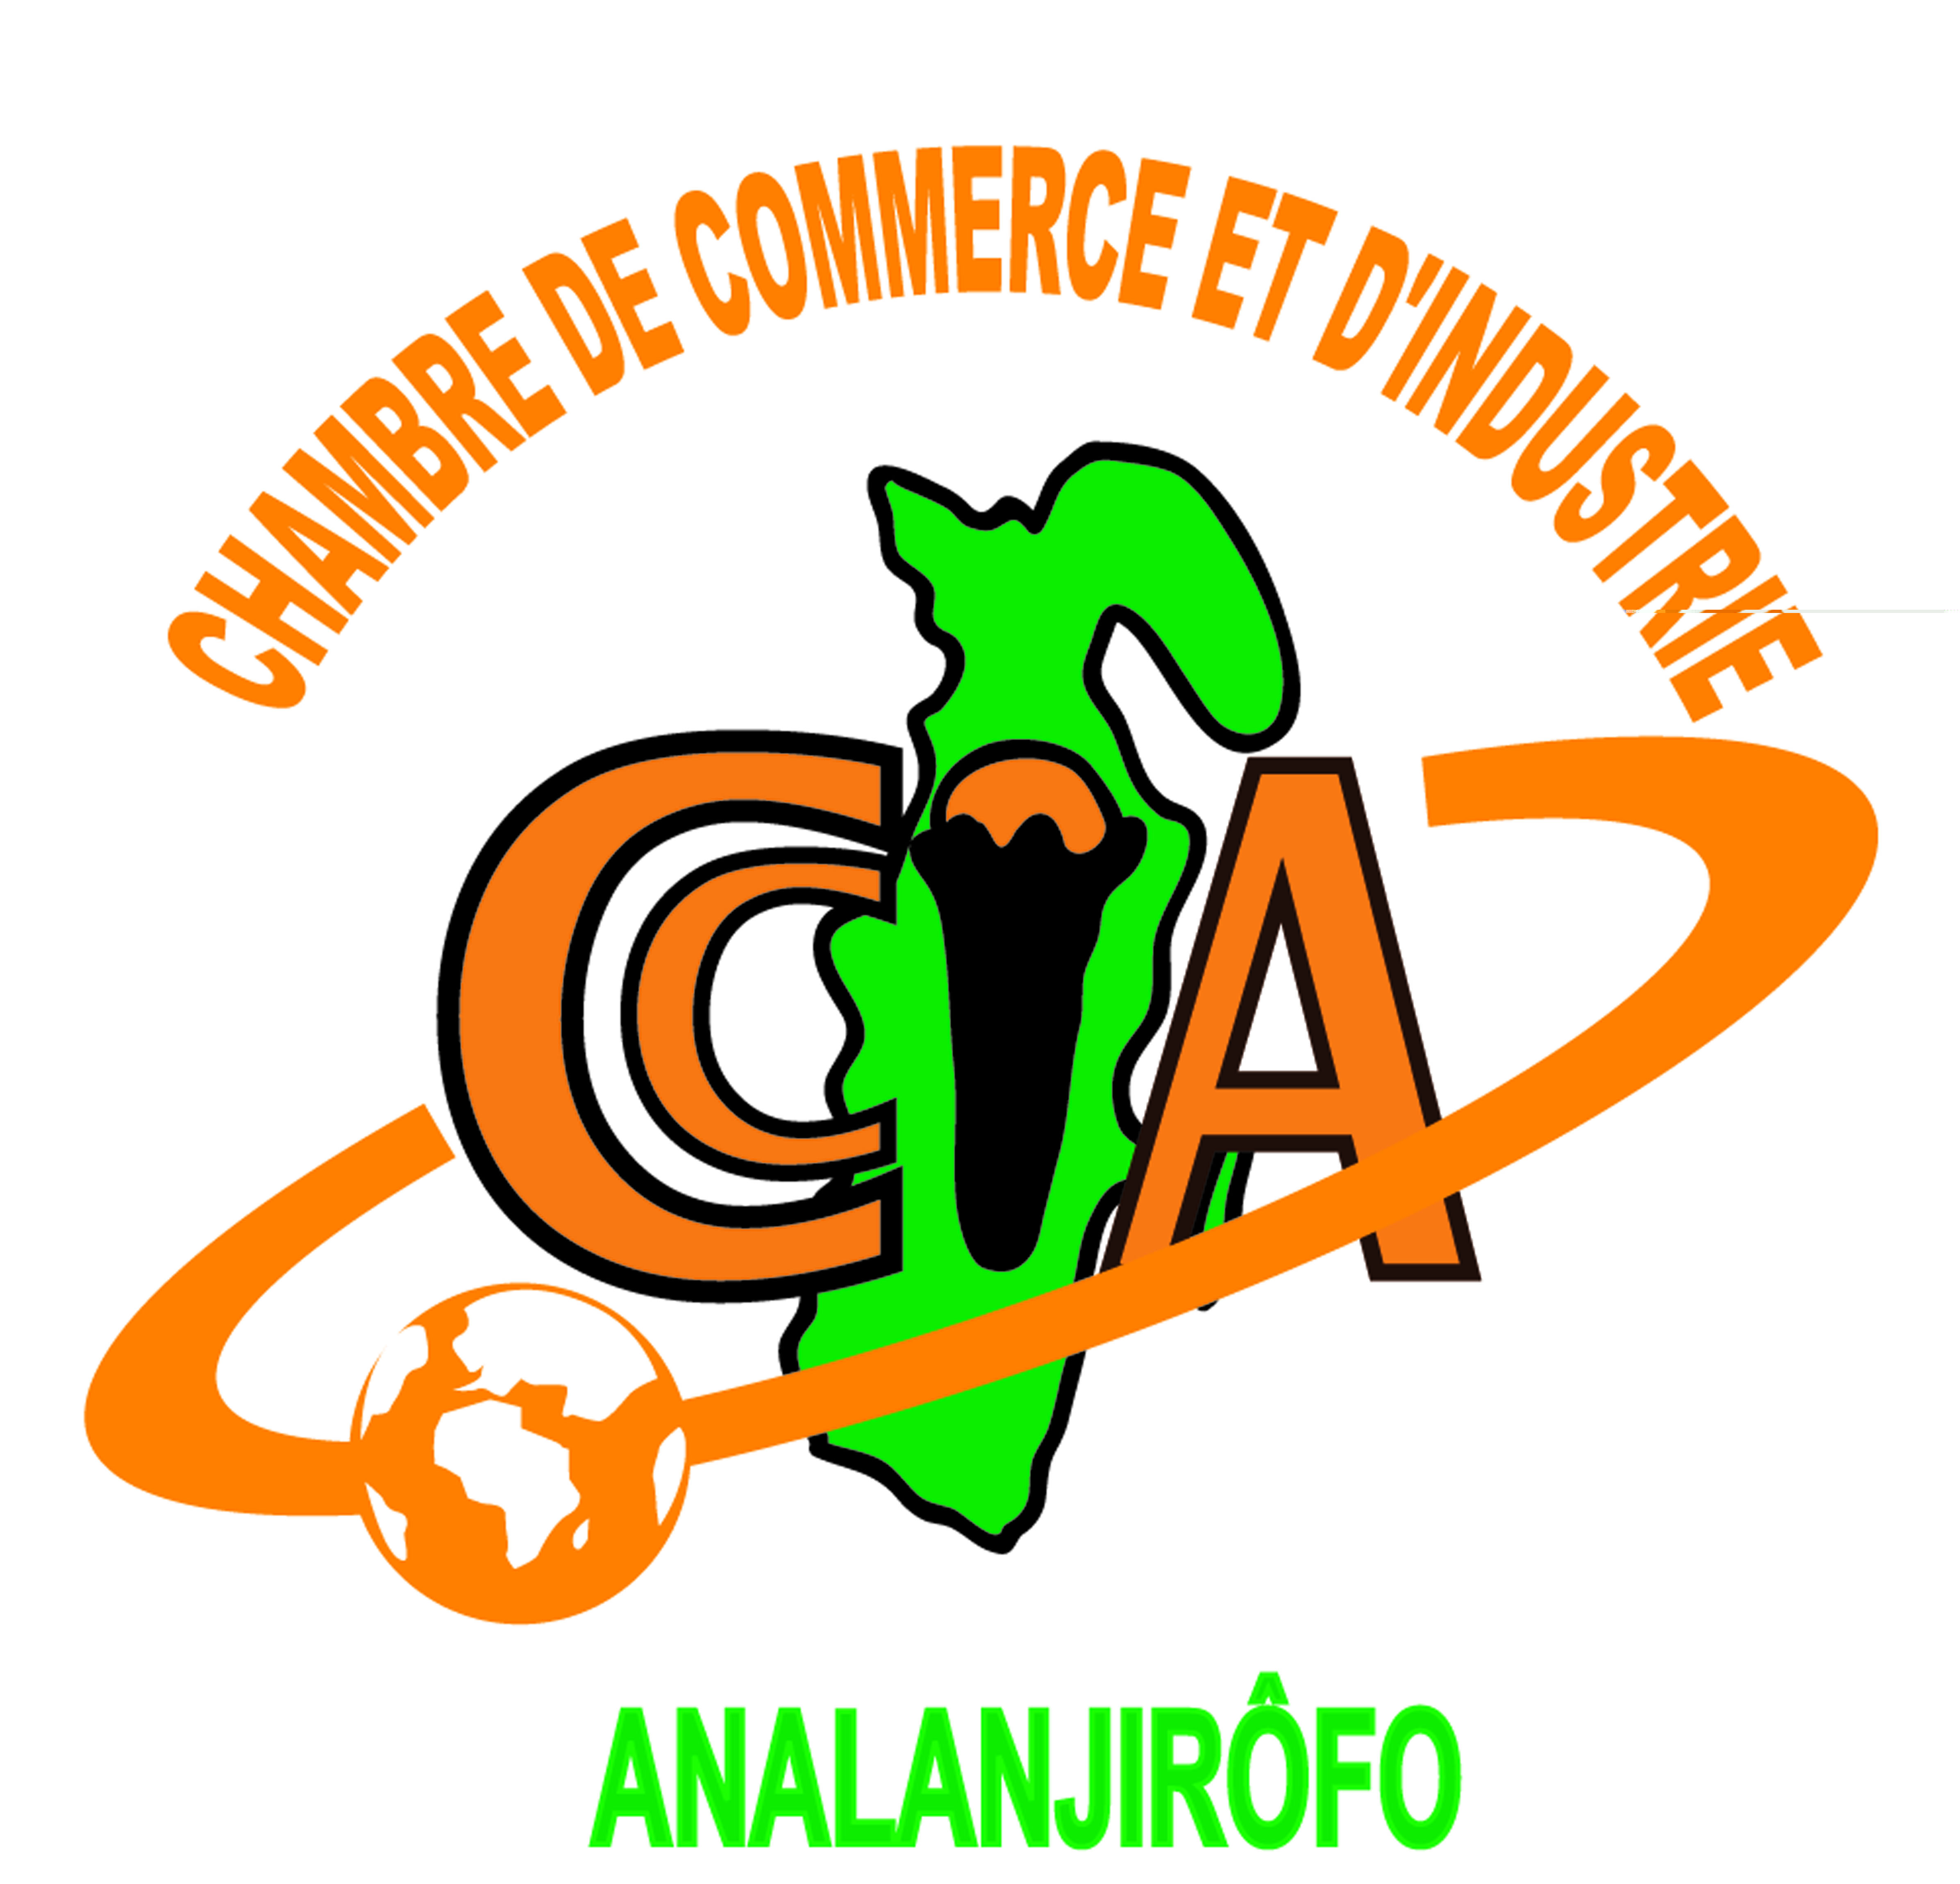 CCI Analanjirofo